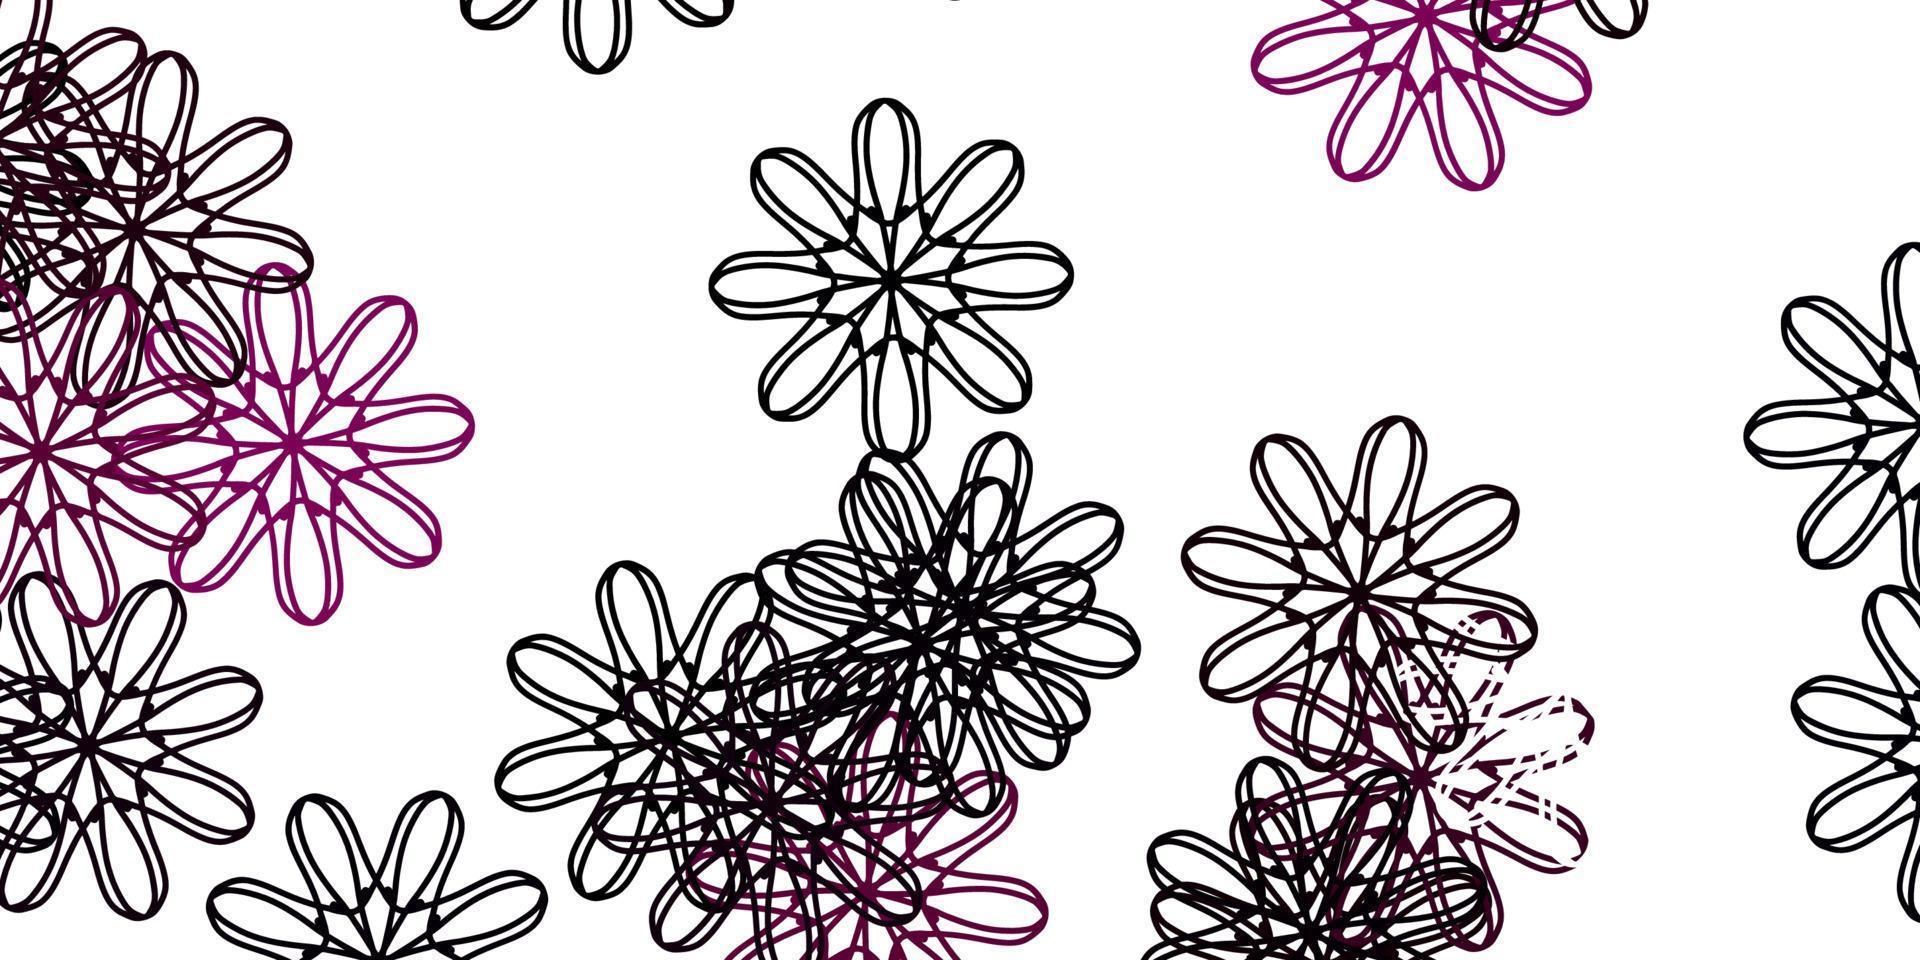 sfondo doodle vettoriale rosa chiaro con fiori.